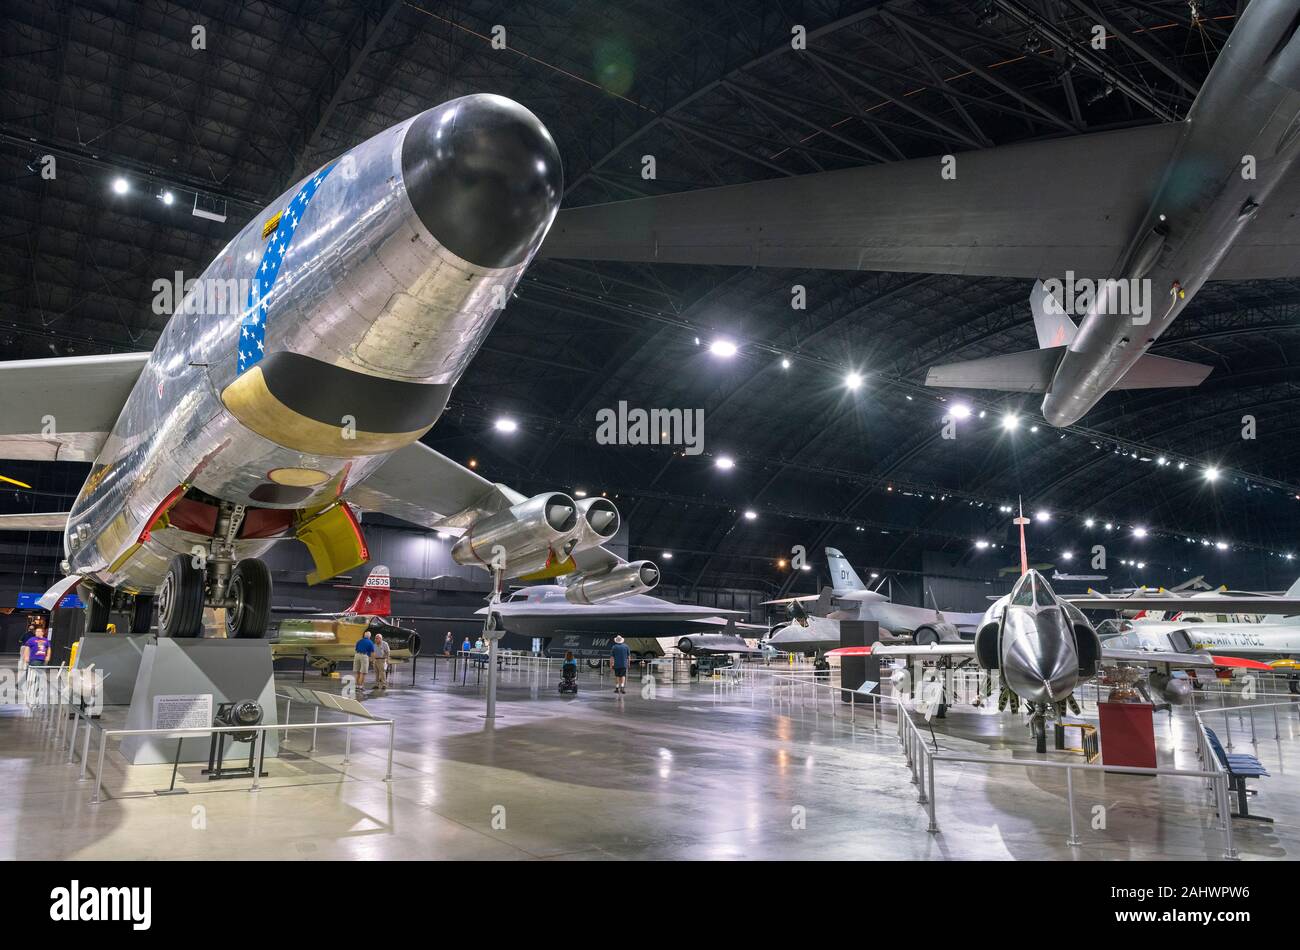 Guerra fría con un avión Boeing RB-47H Stratojet bombardero estratégico en primer plano y un Convair F-102 Delta Dagger a la derecha, el Museo Nacional de la Fuerza Aérea de los Estados Unidos (anteriormente el museo de la Fuerza Aérea de los Estados Unidos), Dayton, Ohio, EE.UU. Foto de stock